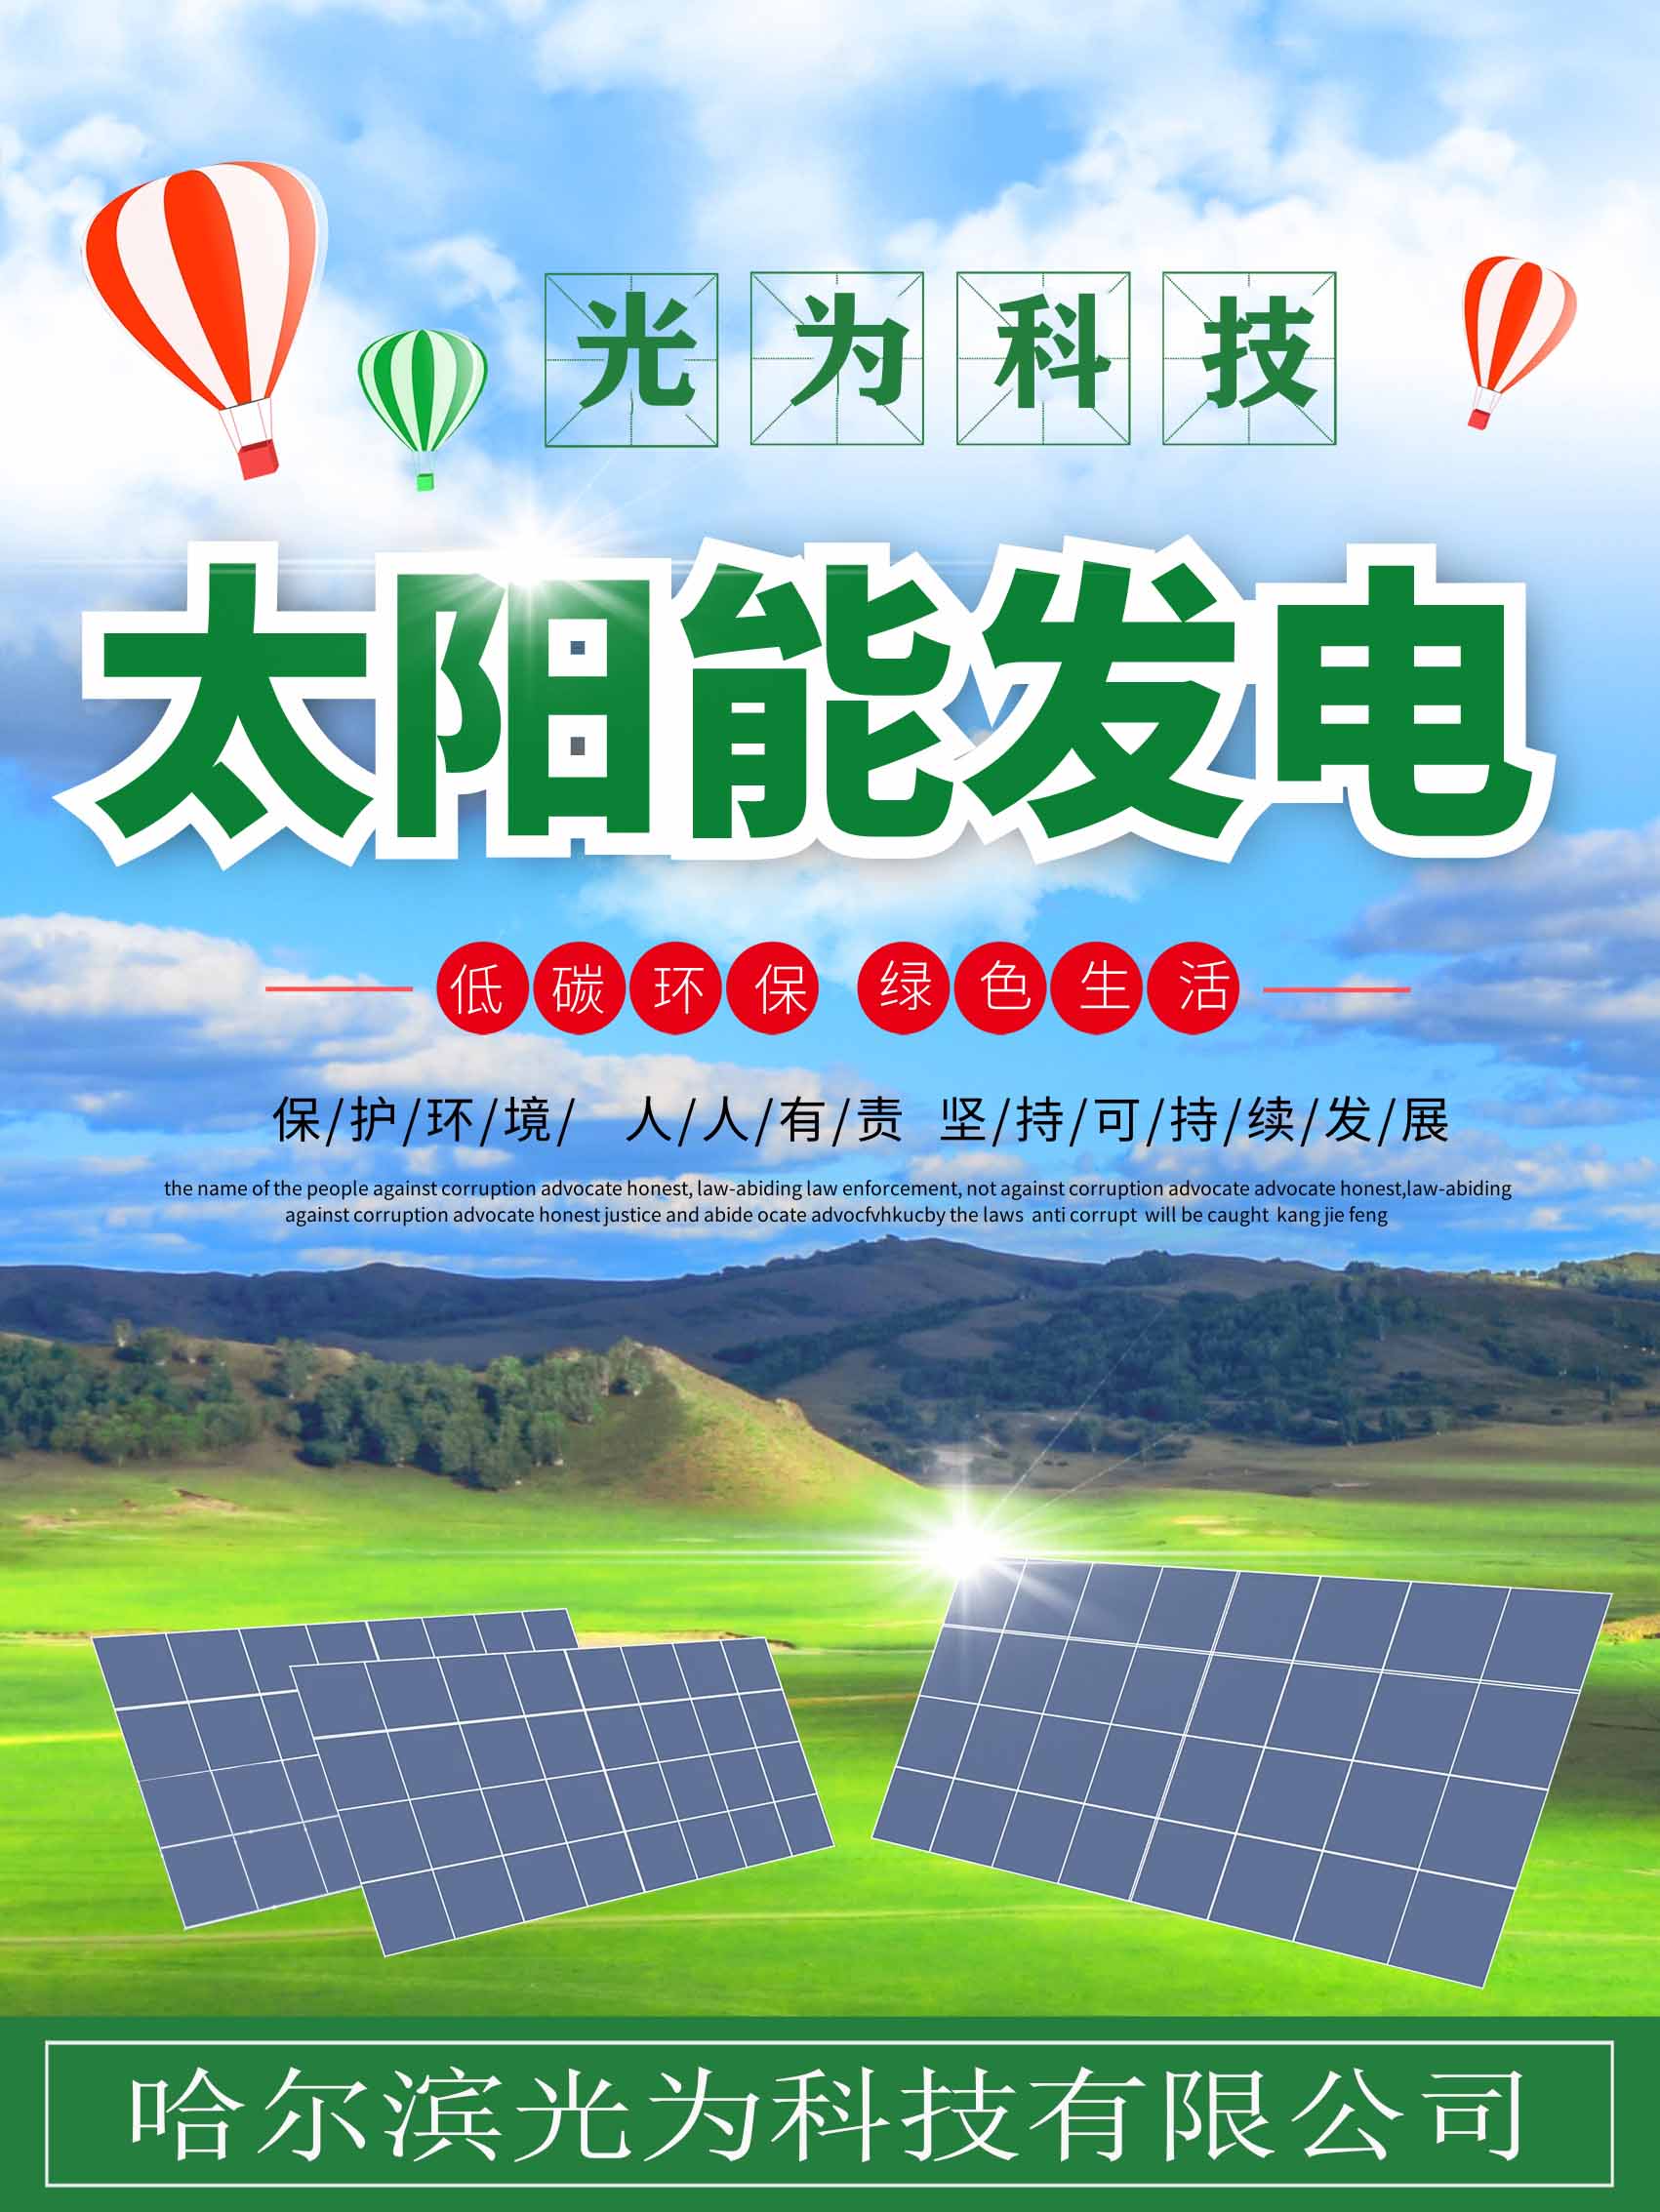 呼倫貝爾莫力達瓦太陽能光伏發電設備批發